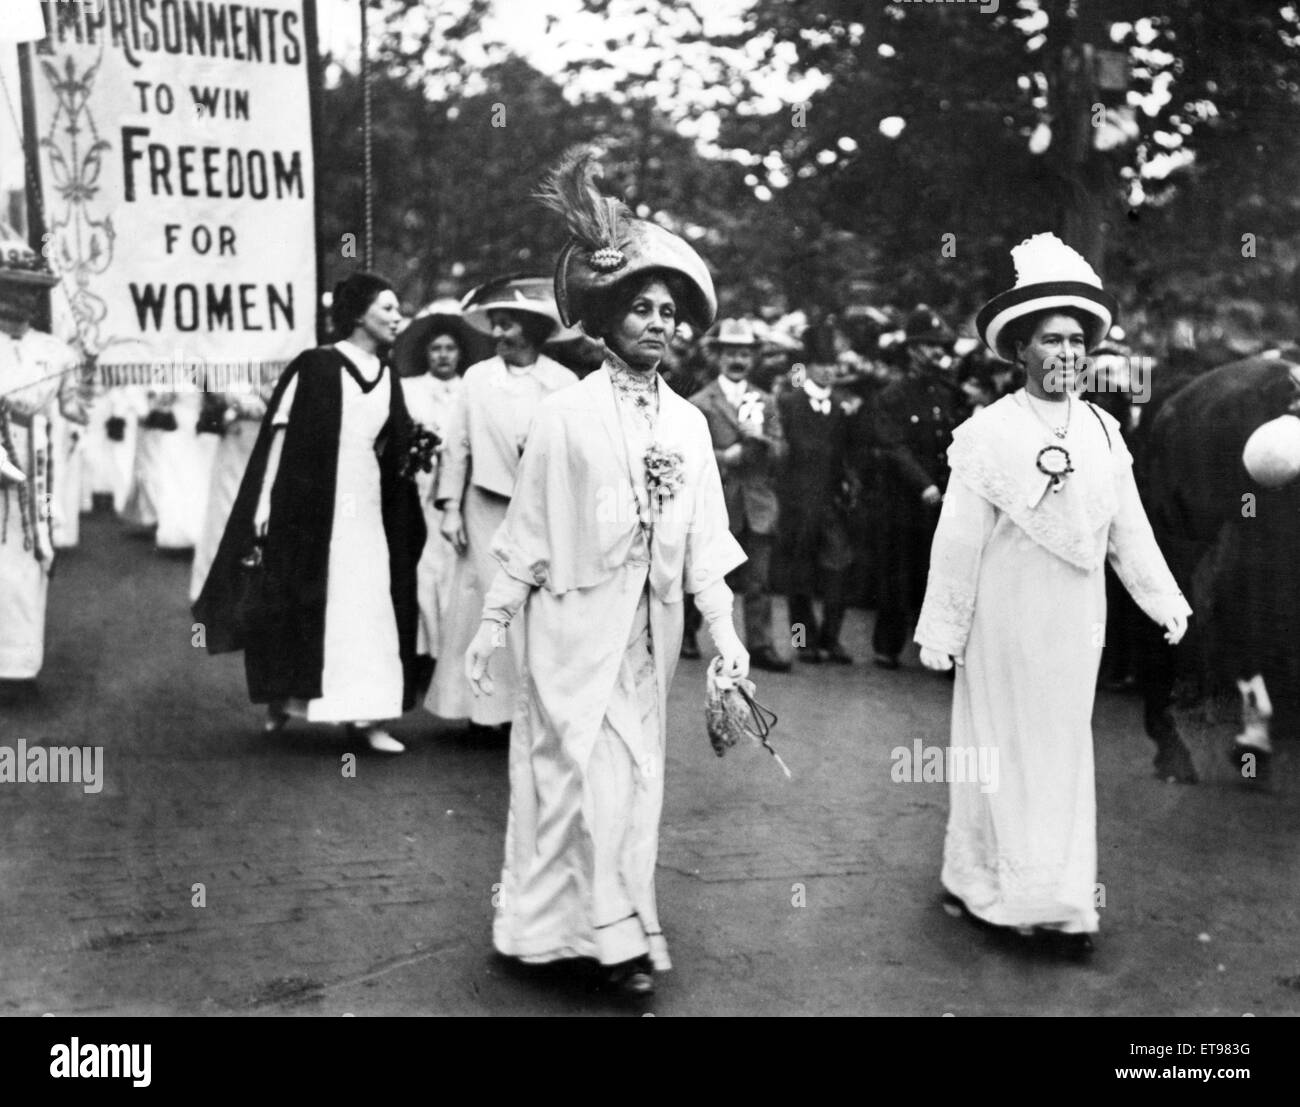 Lady Pethick-Lawrence (rechts) und Frau Pankhurst führen eine Frauenrechtlerin Demonstration, Christabel Pankhurst (in schwarz & weiß) folgt hinter ihrer Mutter. Um 1910. Stockfoto